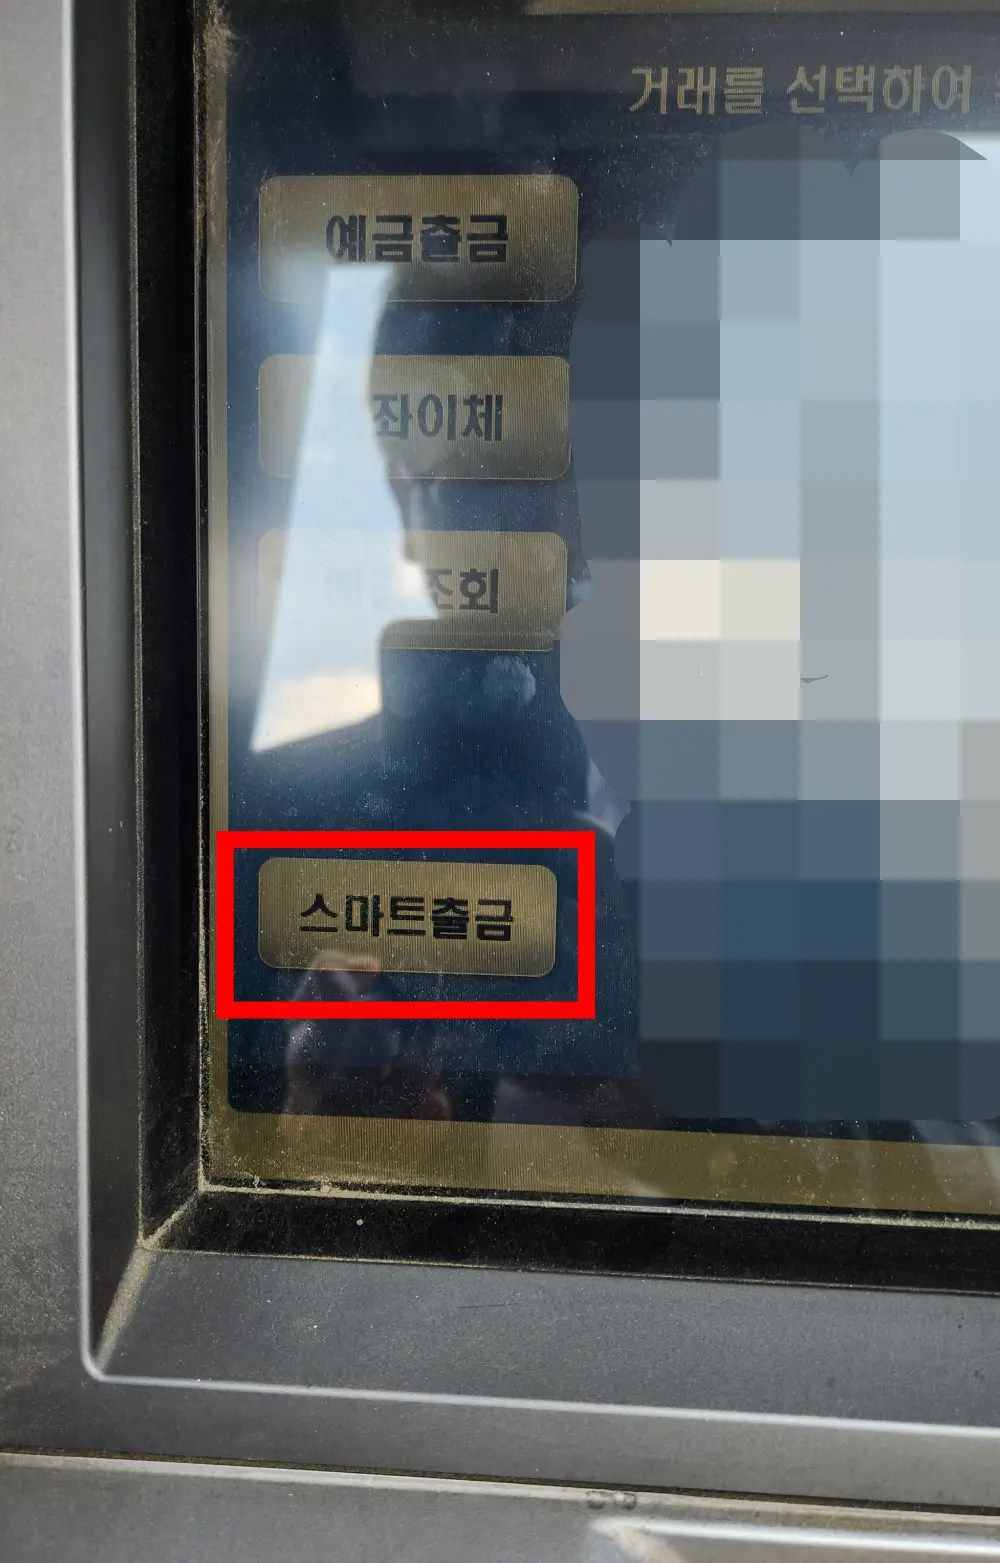 한국전자금융-ATM-스마트출금-버튼